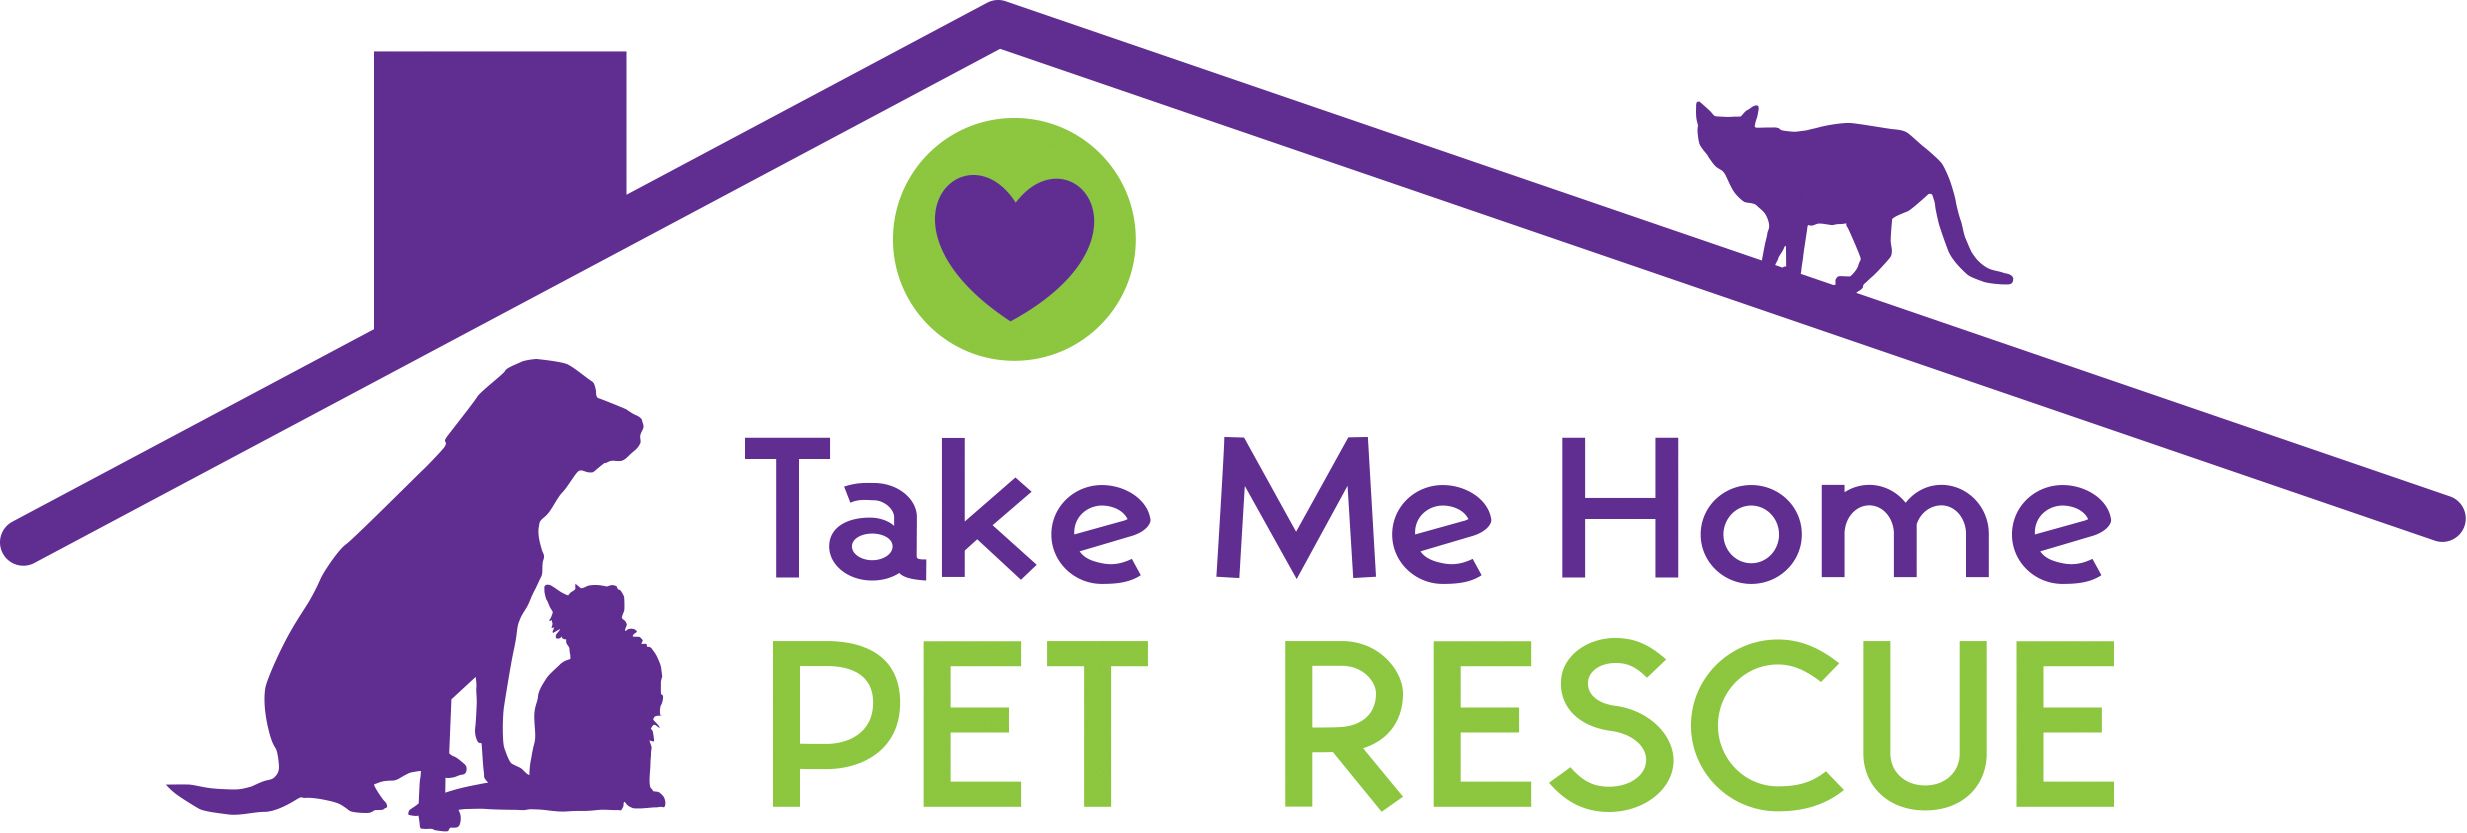 Take Me Home Pet Rescue